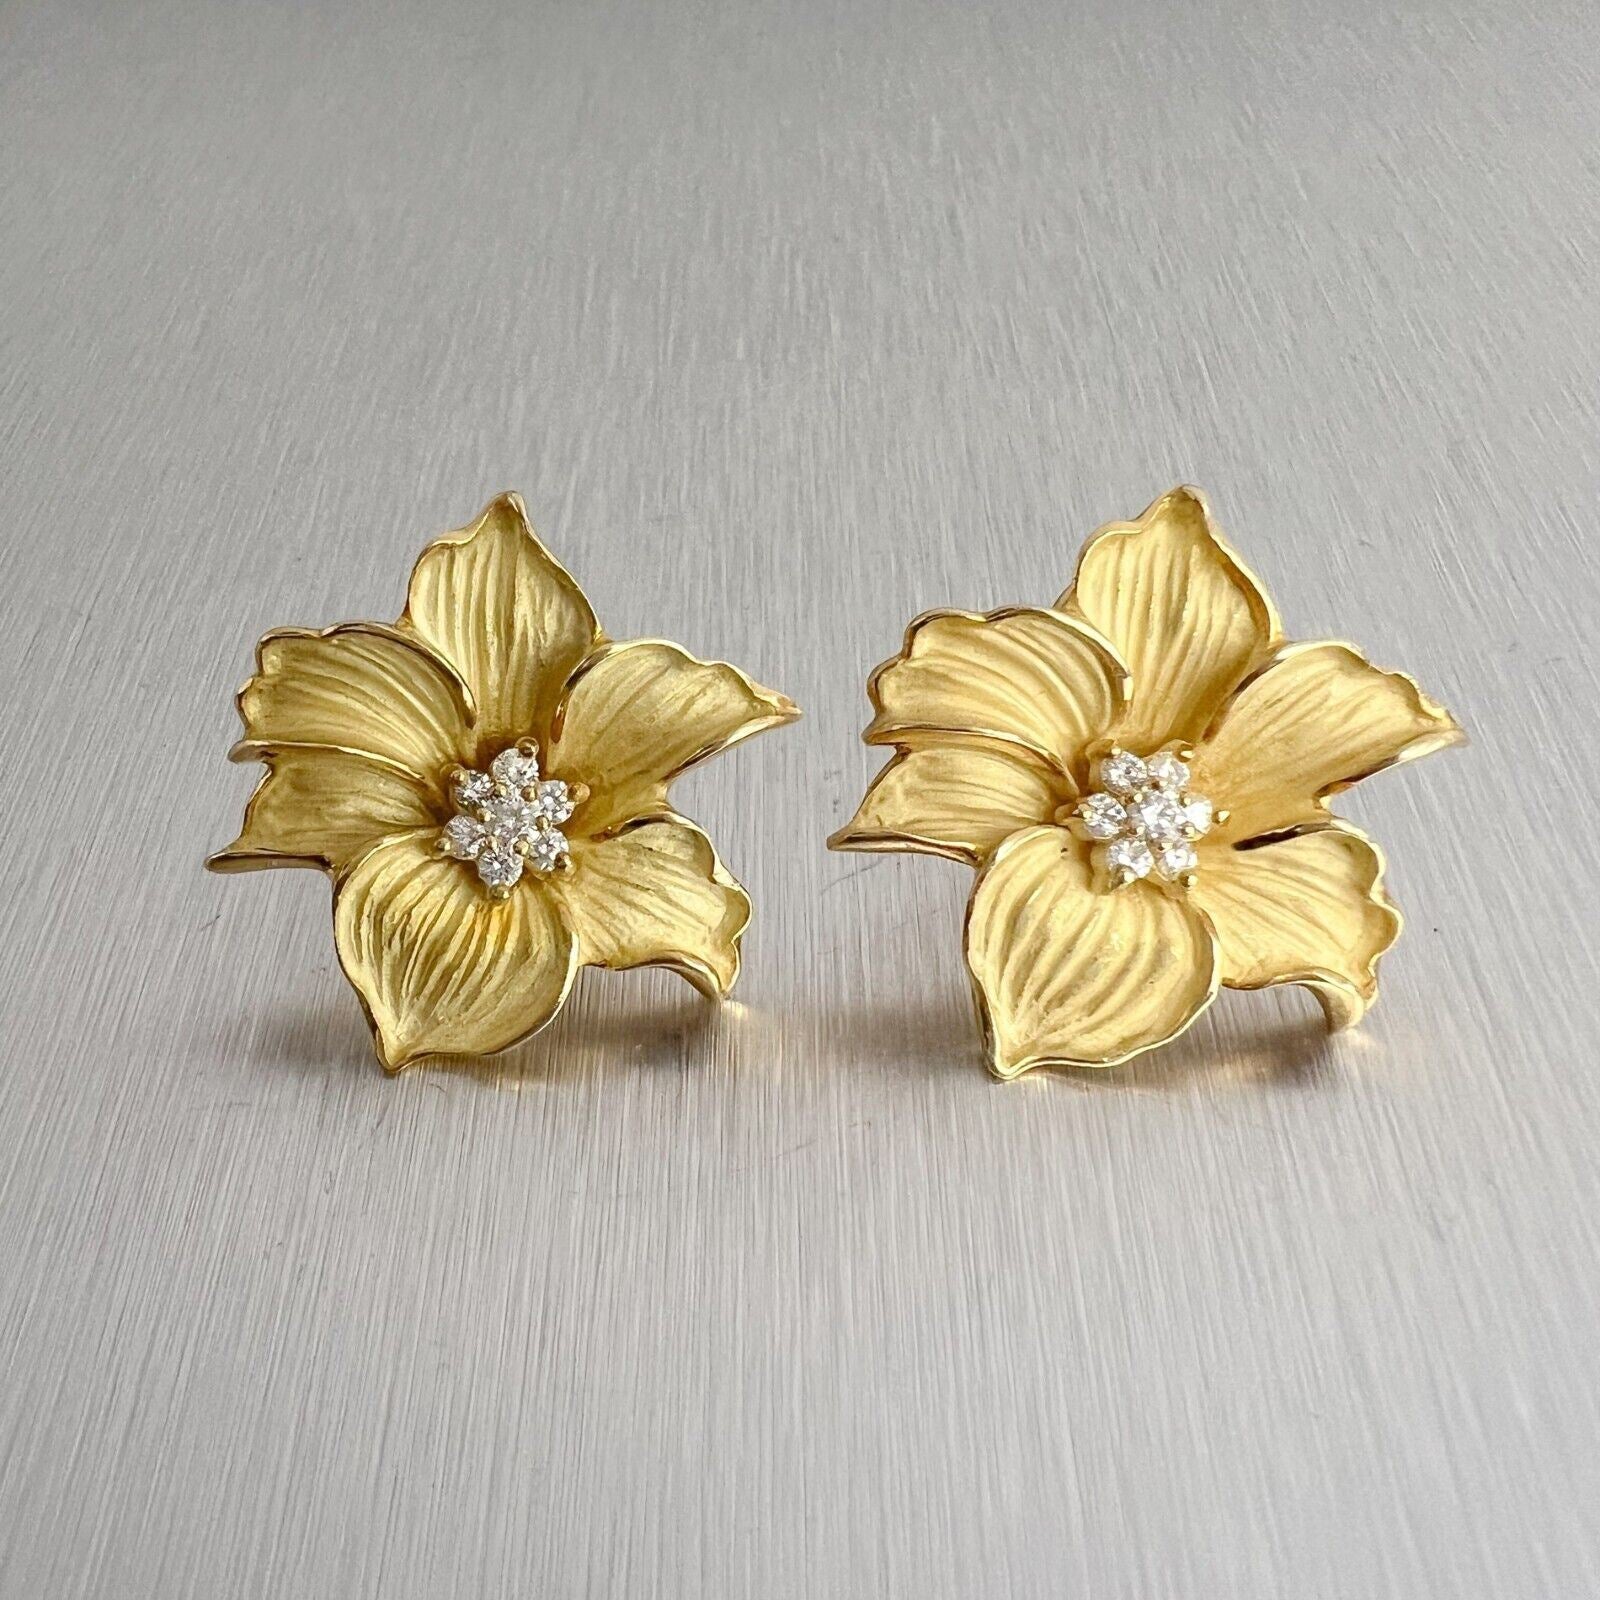 18k Yellow Gold Diamond Peach Blossom Flower Omega Back Earrings 0.50ctw 21.3g